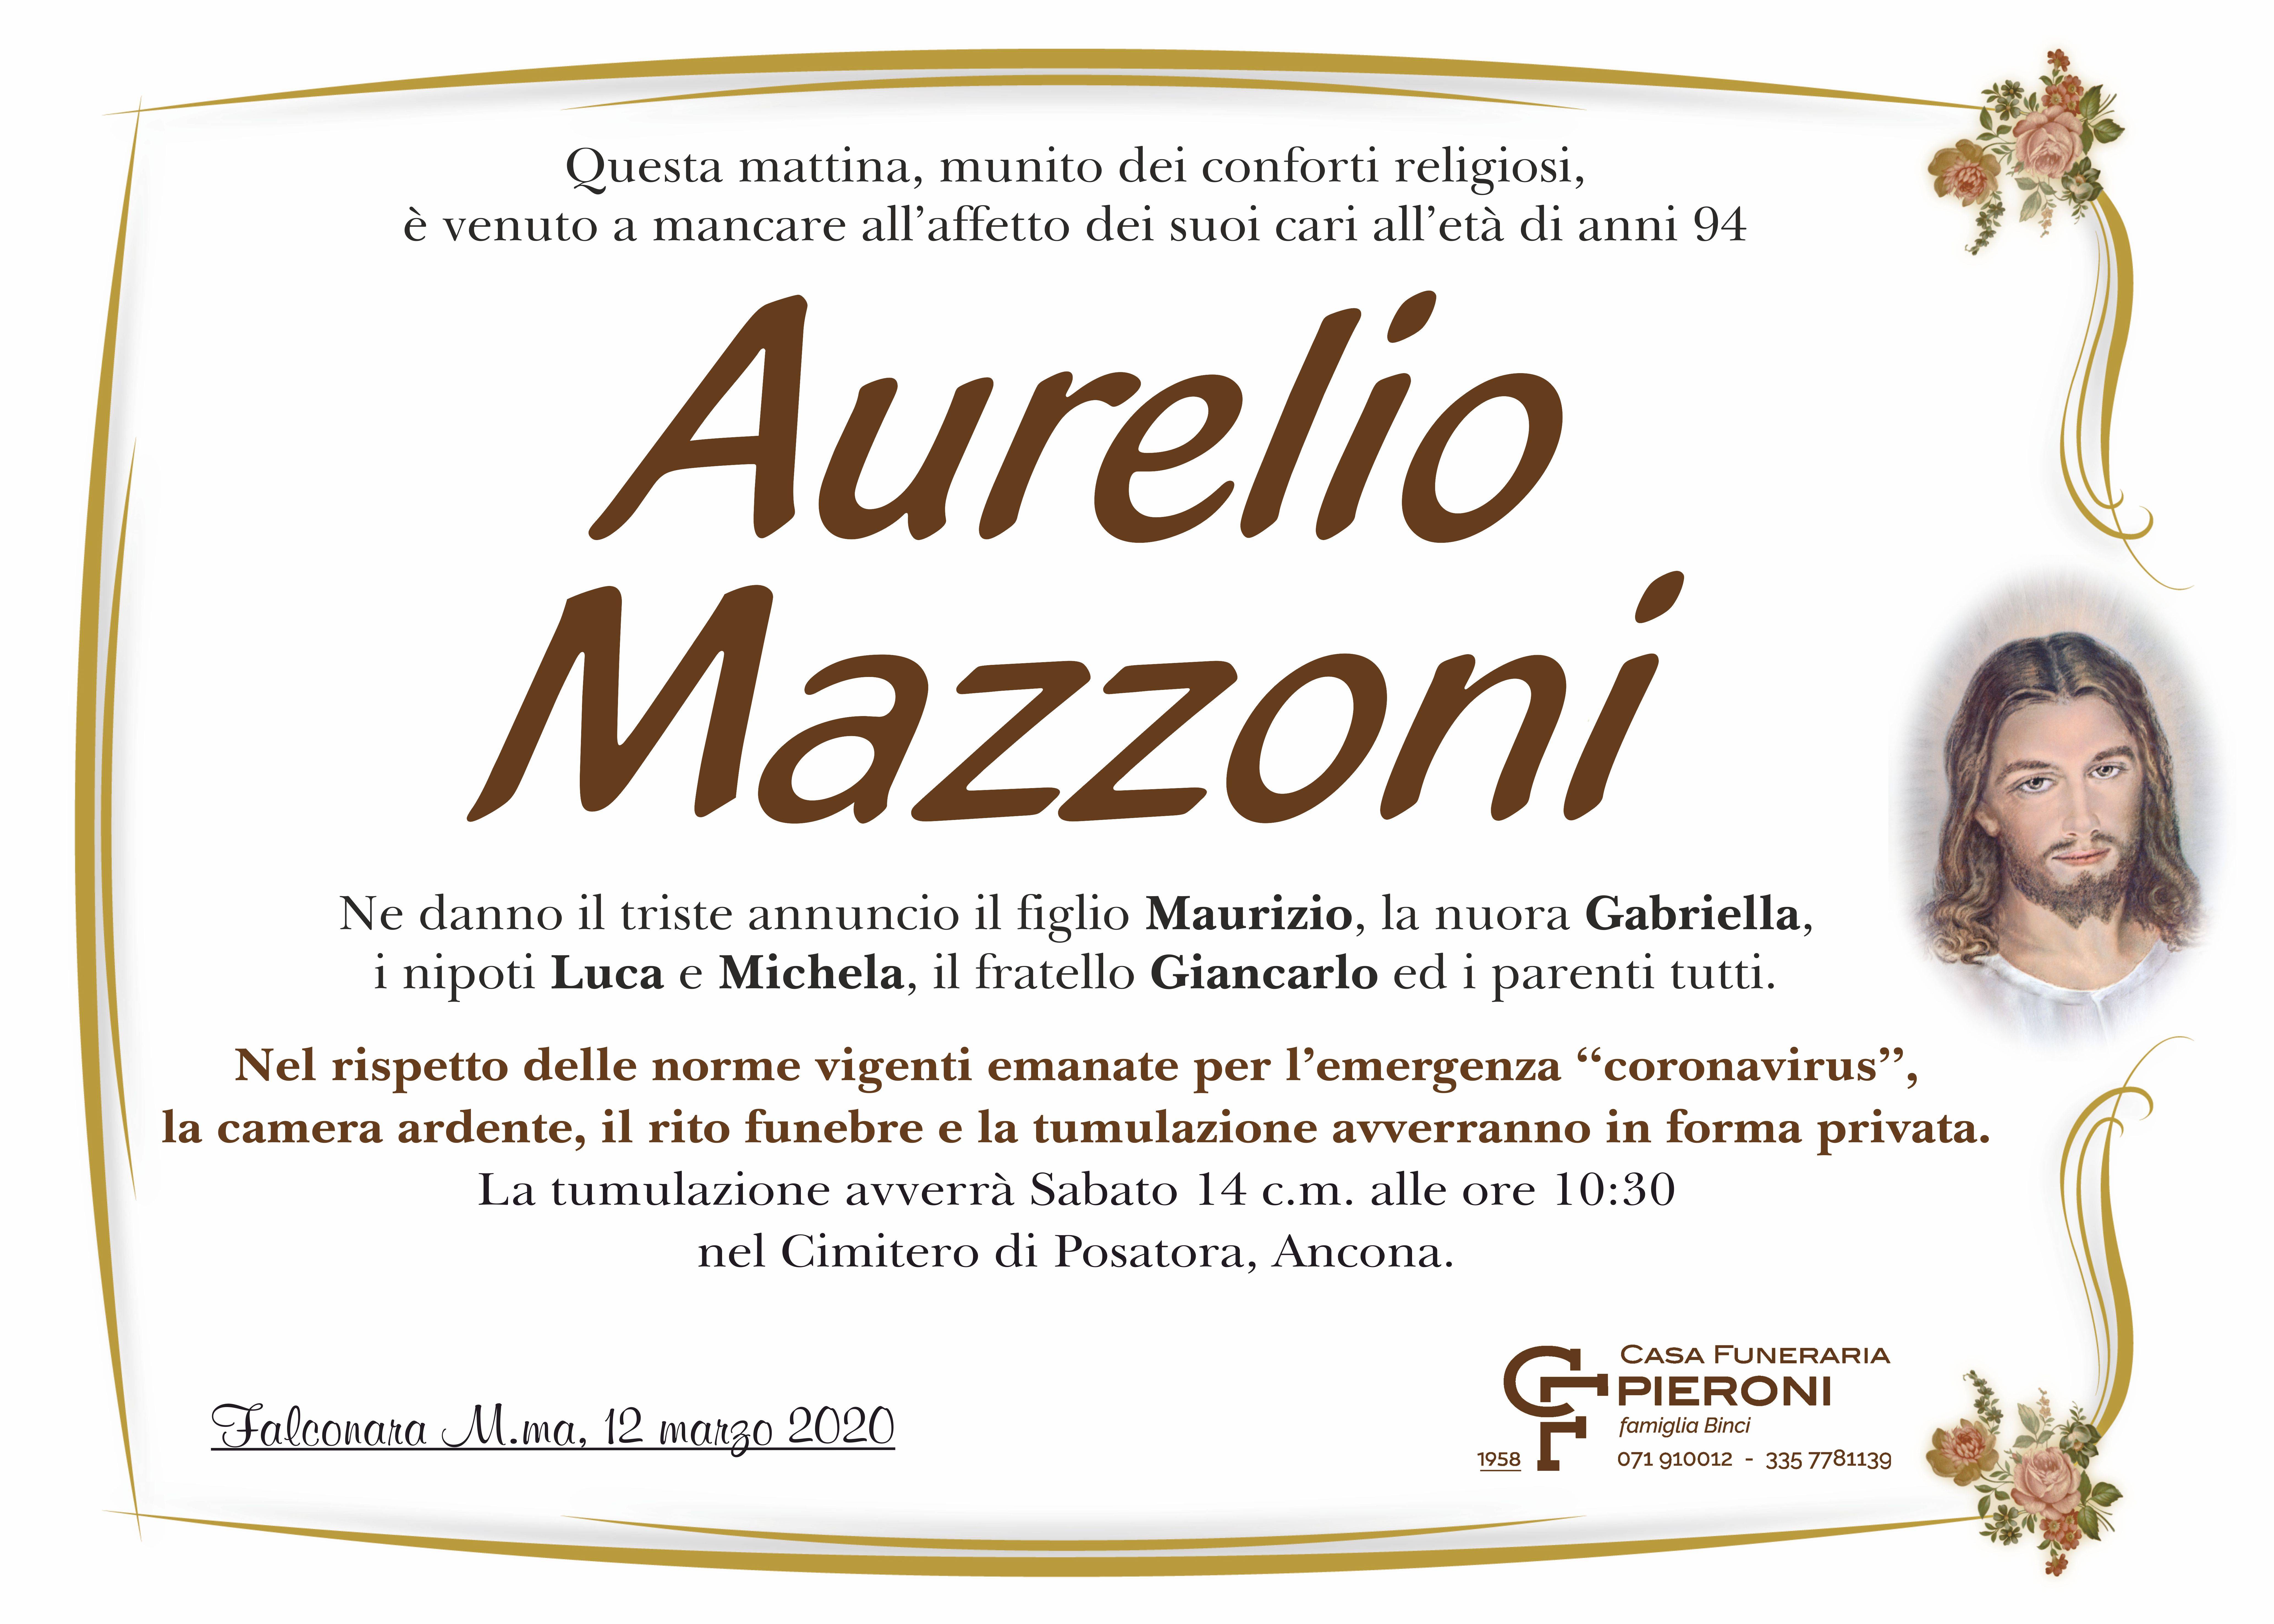 Aurelio Mazzoni